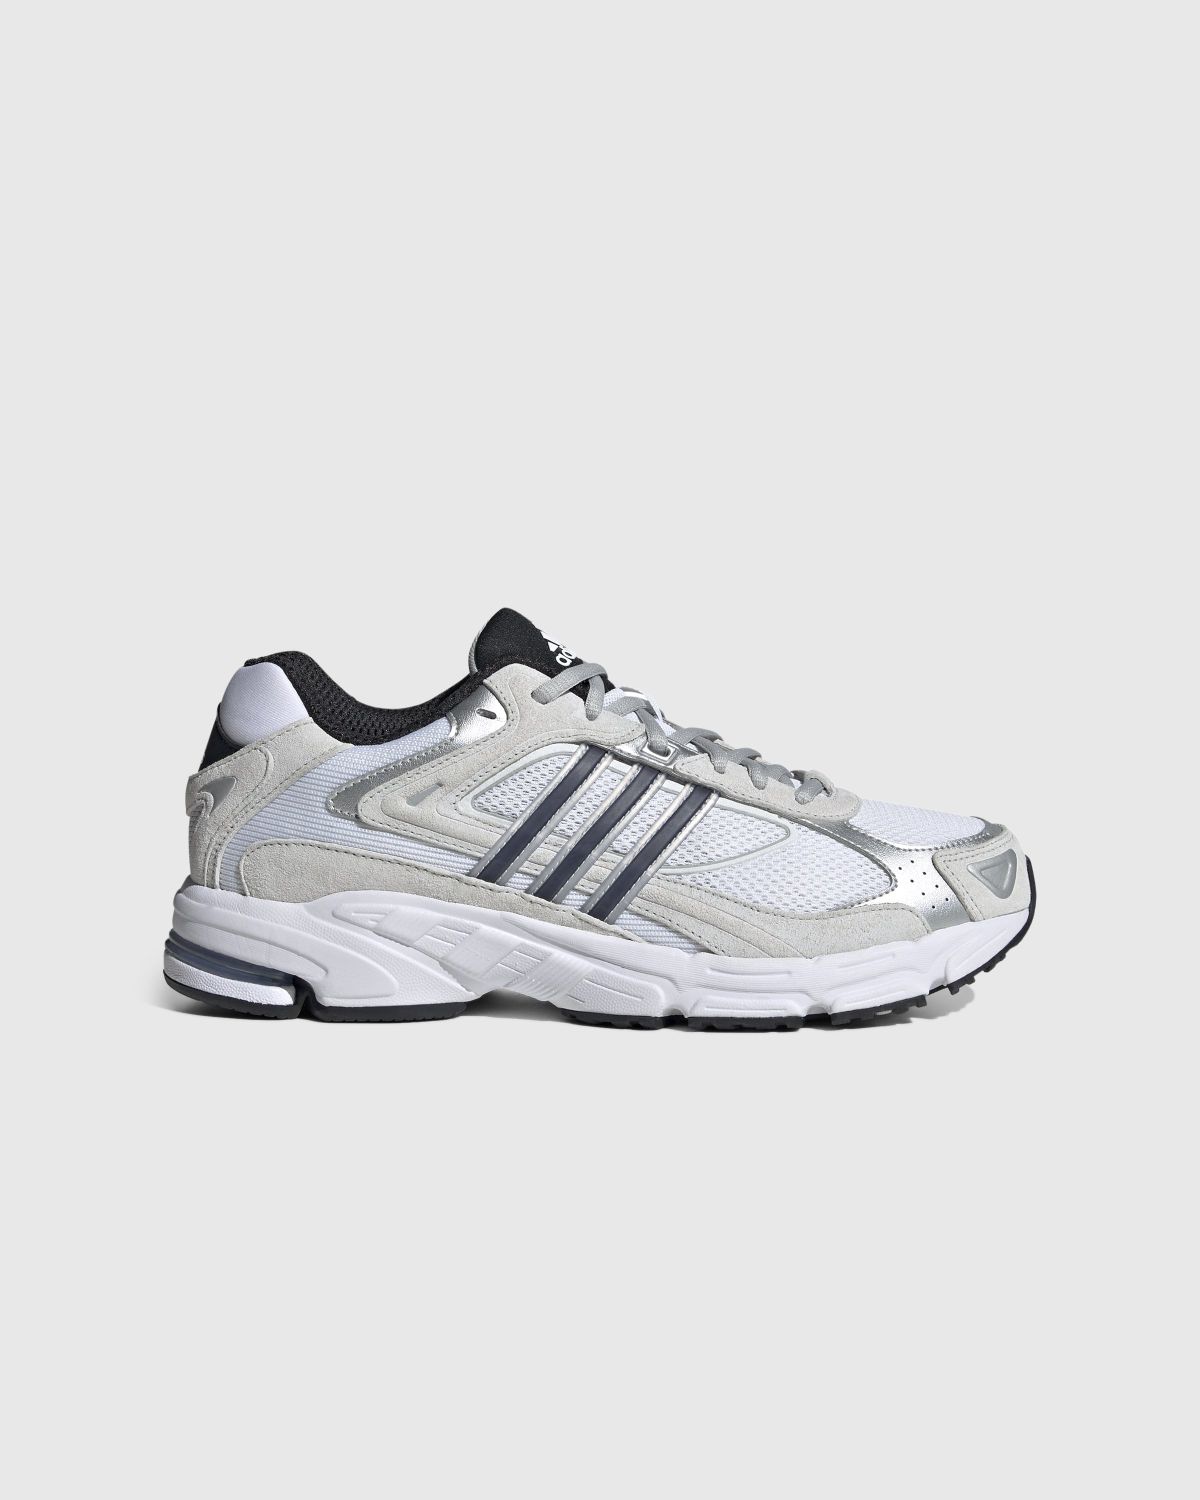 Adidas – Response CL White/Black  - Sneakers - White - Image 1